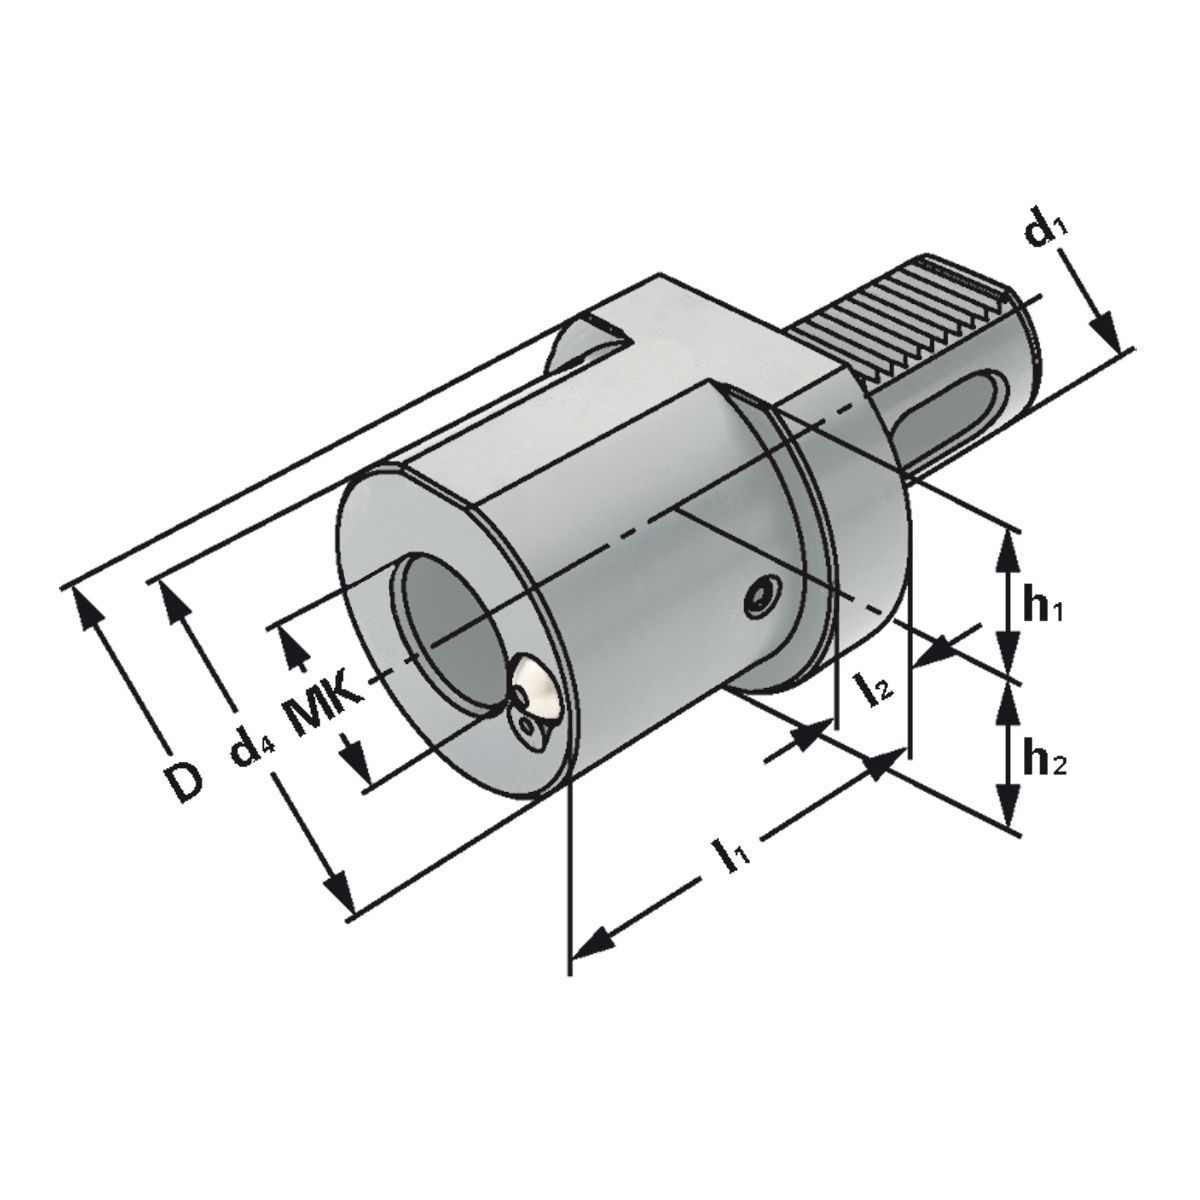 MK-Bohrerhalter F1-40xMK2 DIN 69880 (ISO 10889)